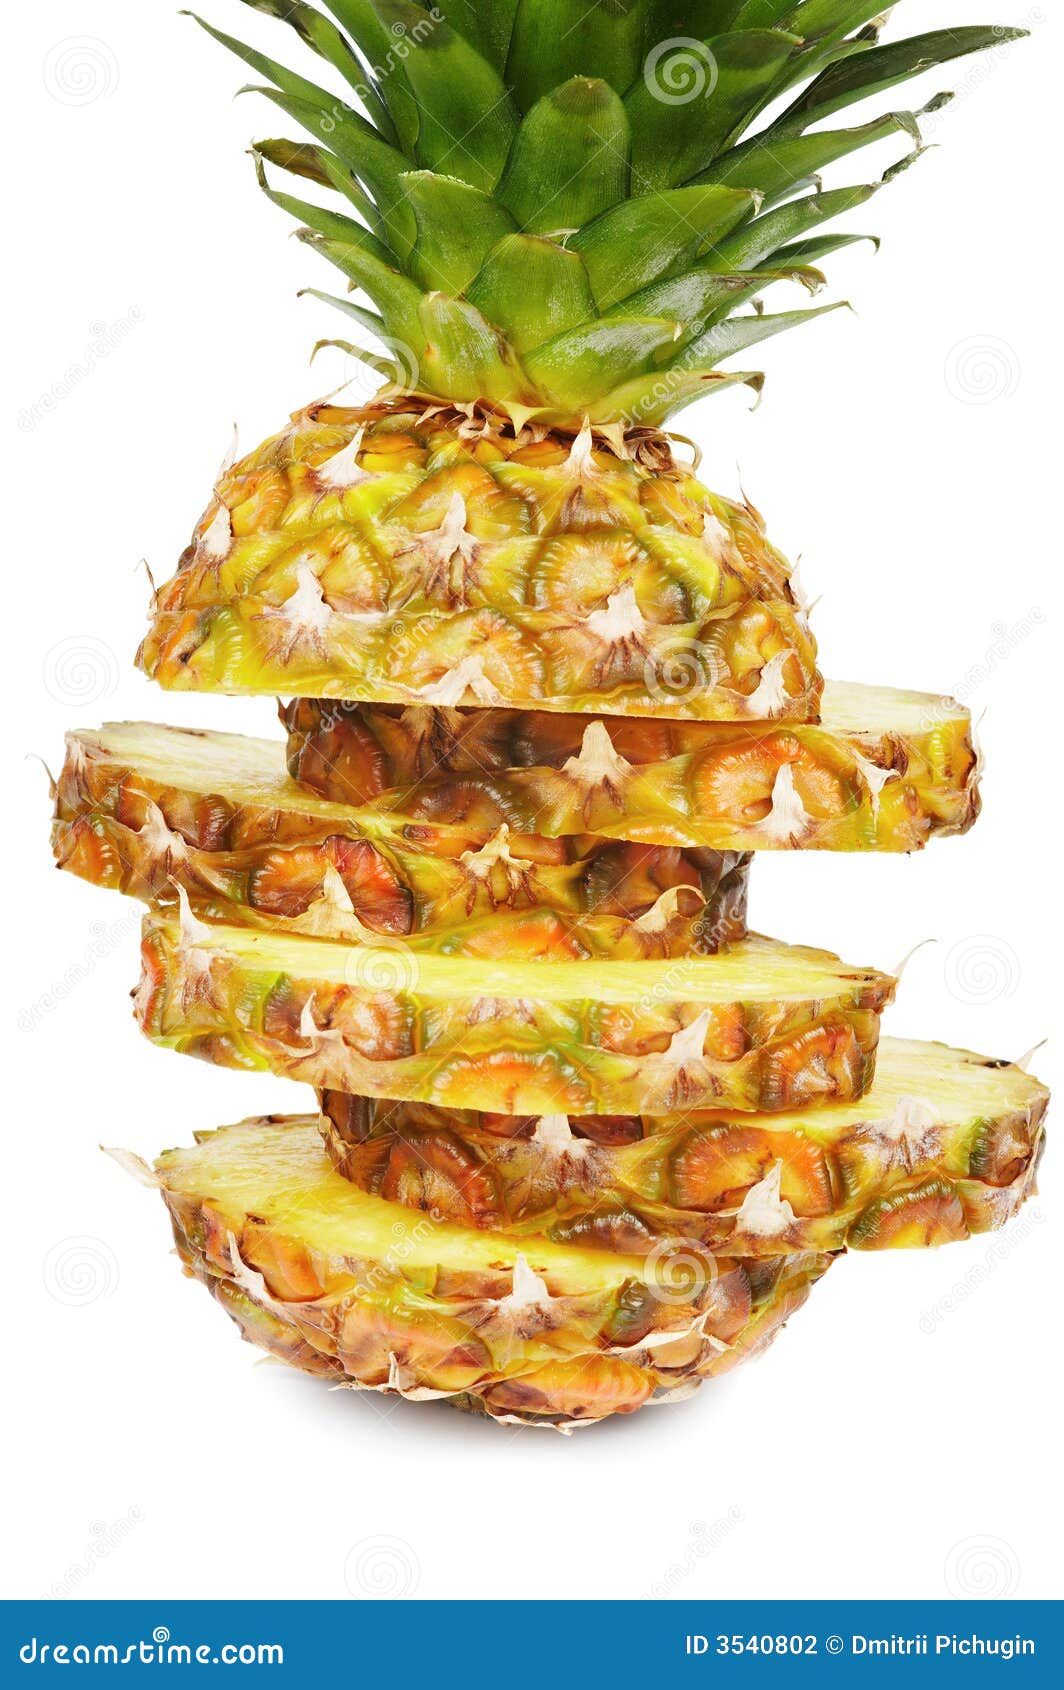 菠萝切块图片,菠萝切块摆放,菠萝切块卖_大山谷图库